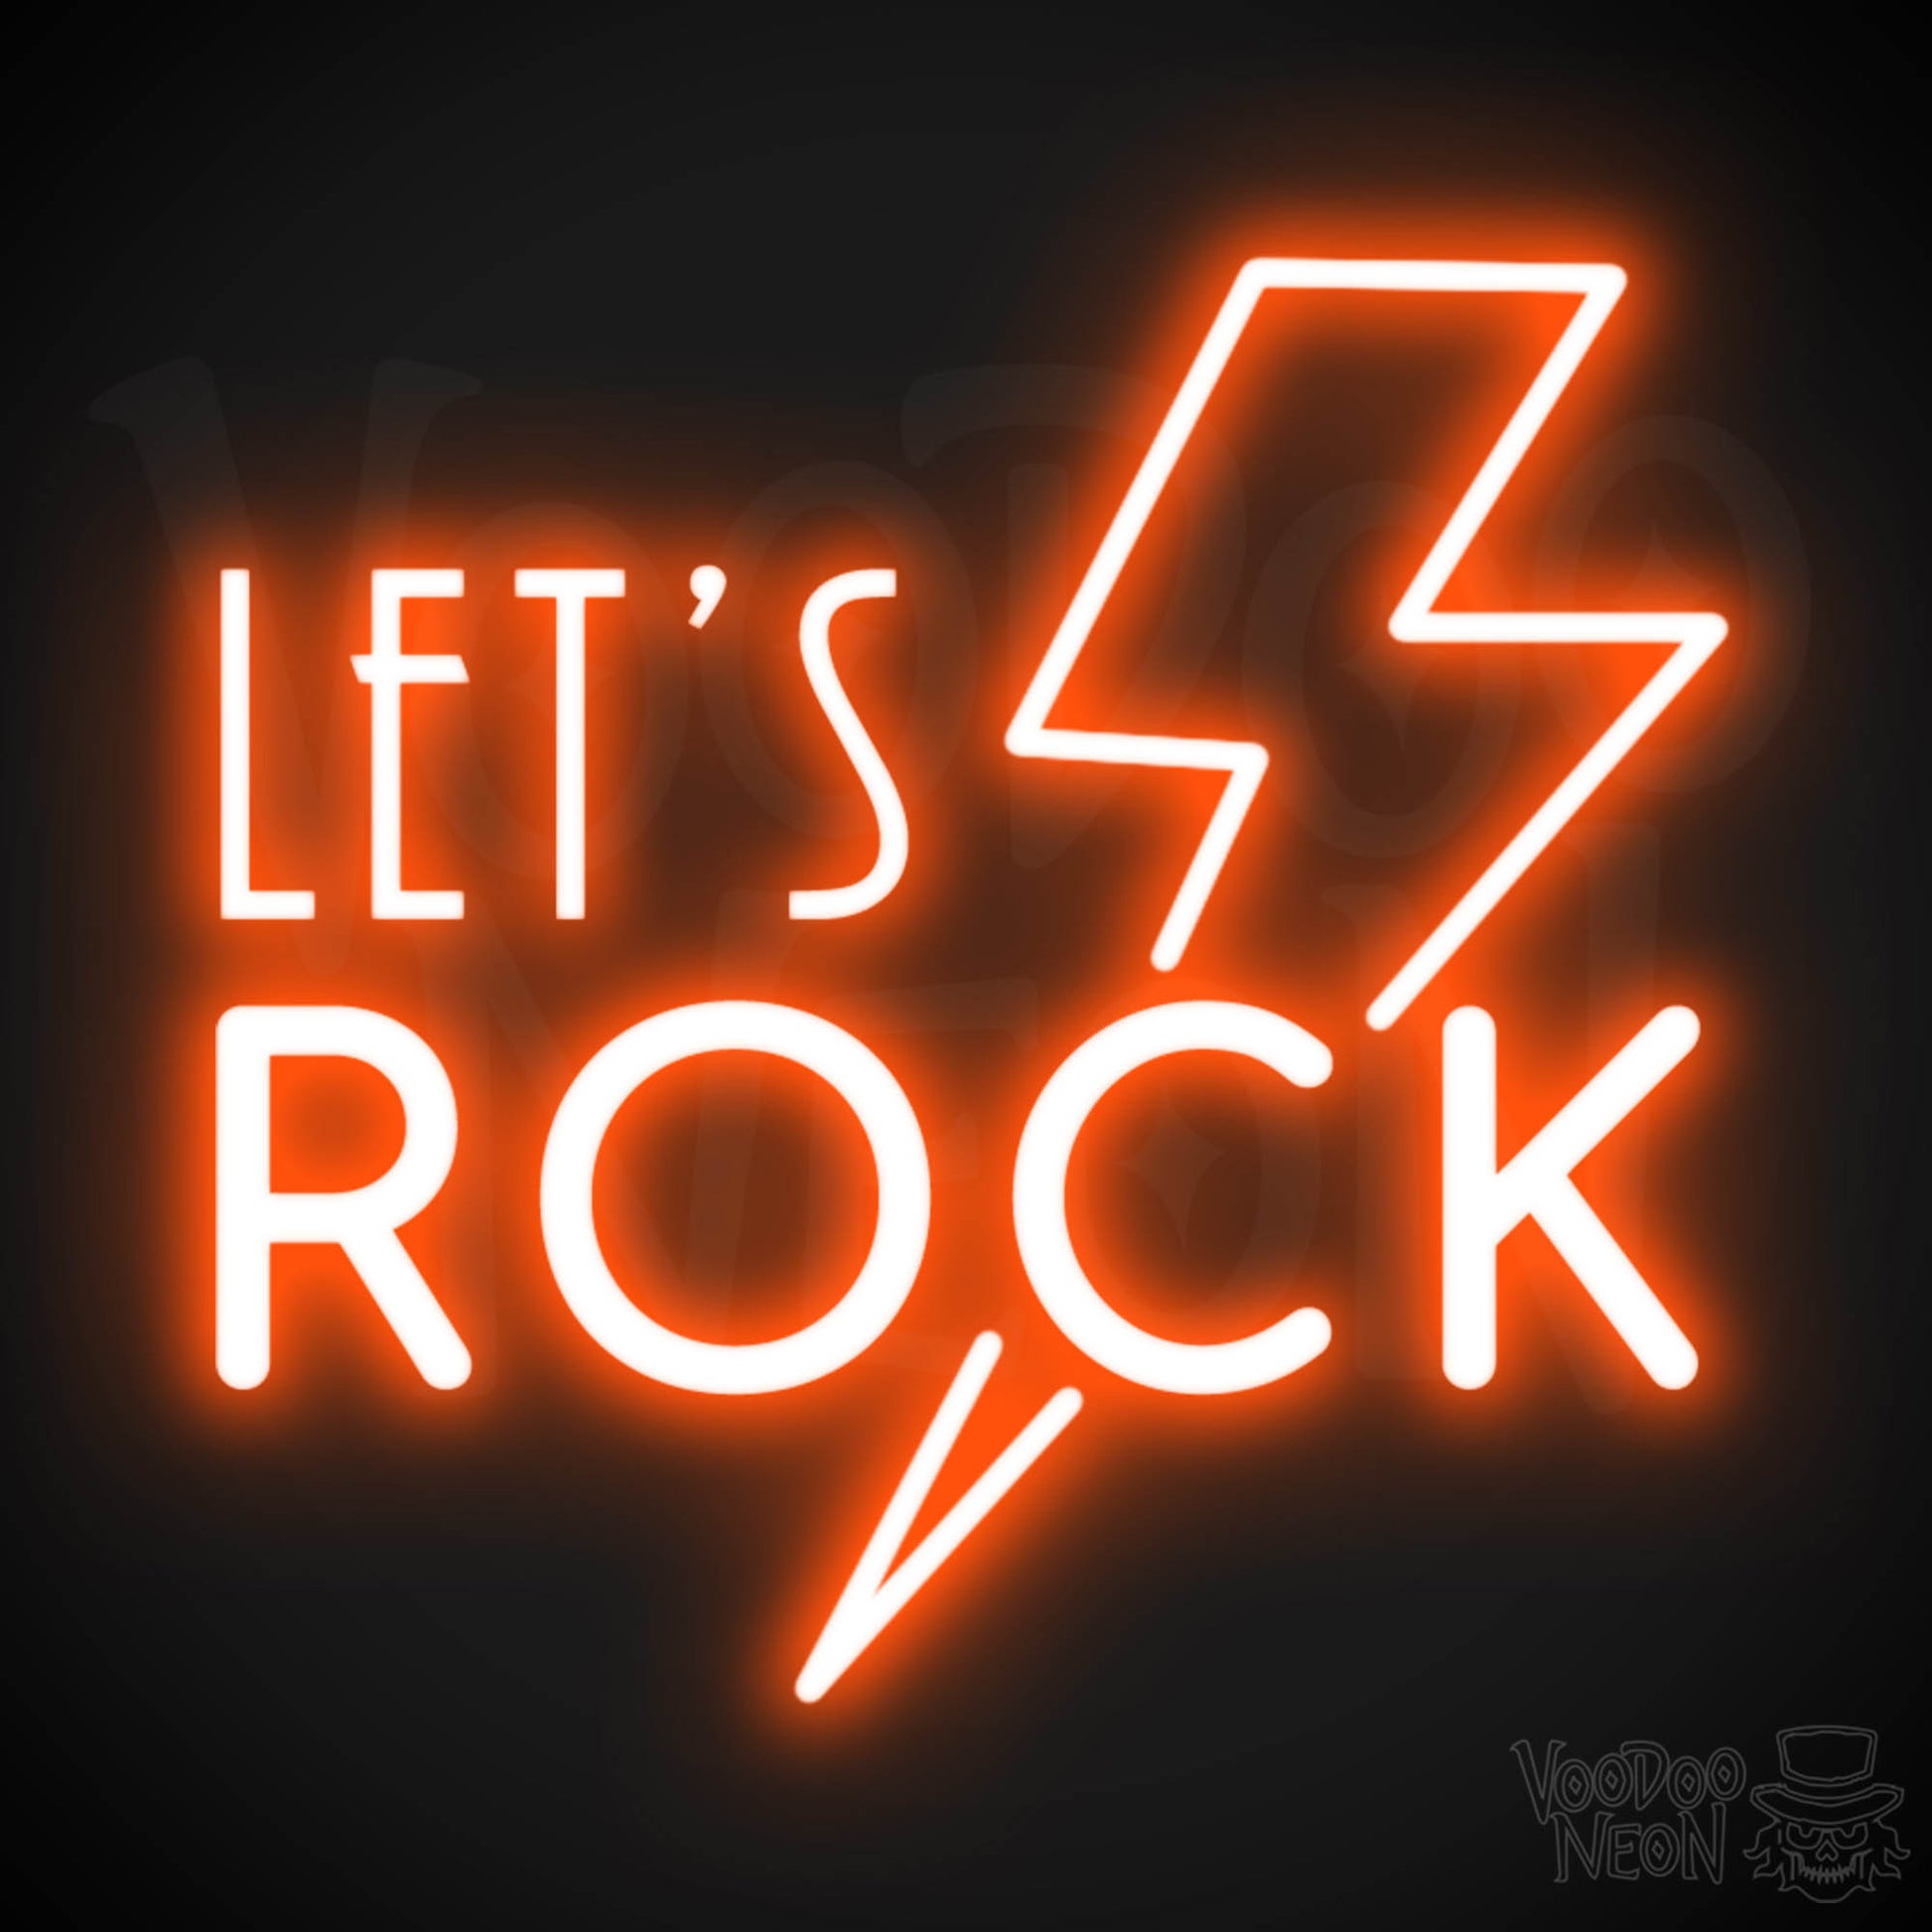 Let's Rock Neon Sign - Let's Rock LED Light Up Sign - Color Orange